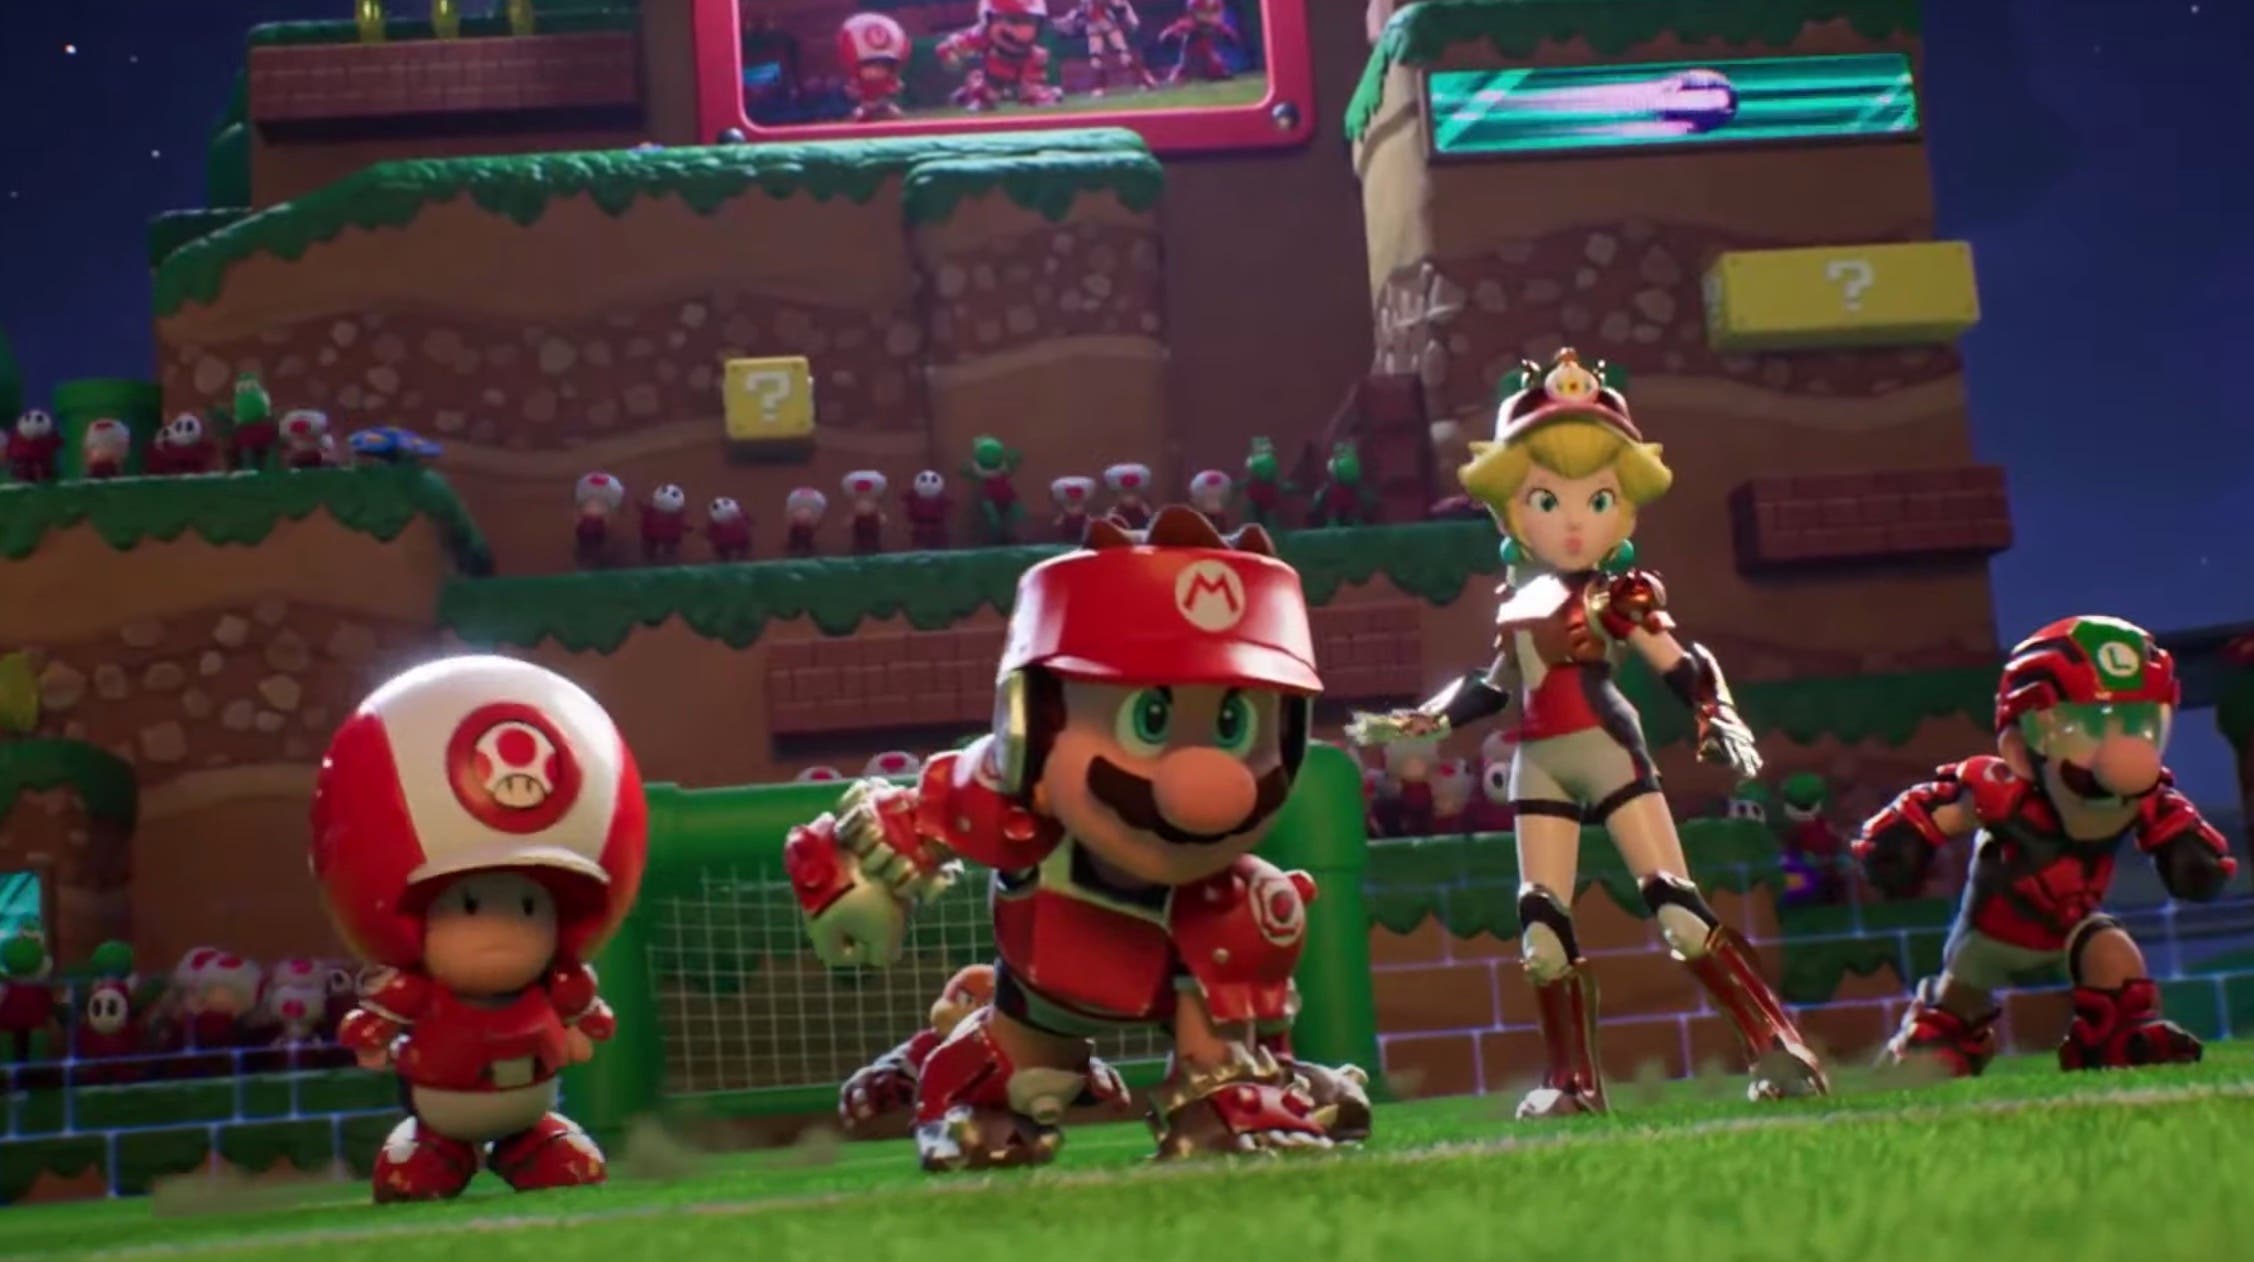 Nuevo gameplay oficial de Mario Strikers: Battle League Football